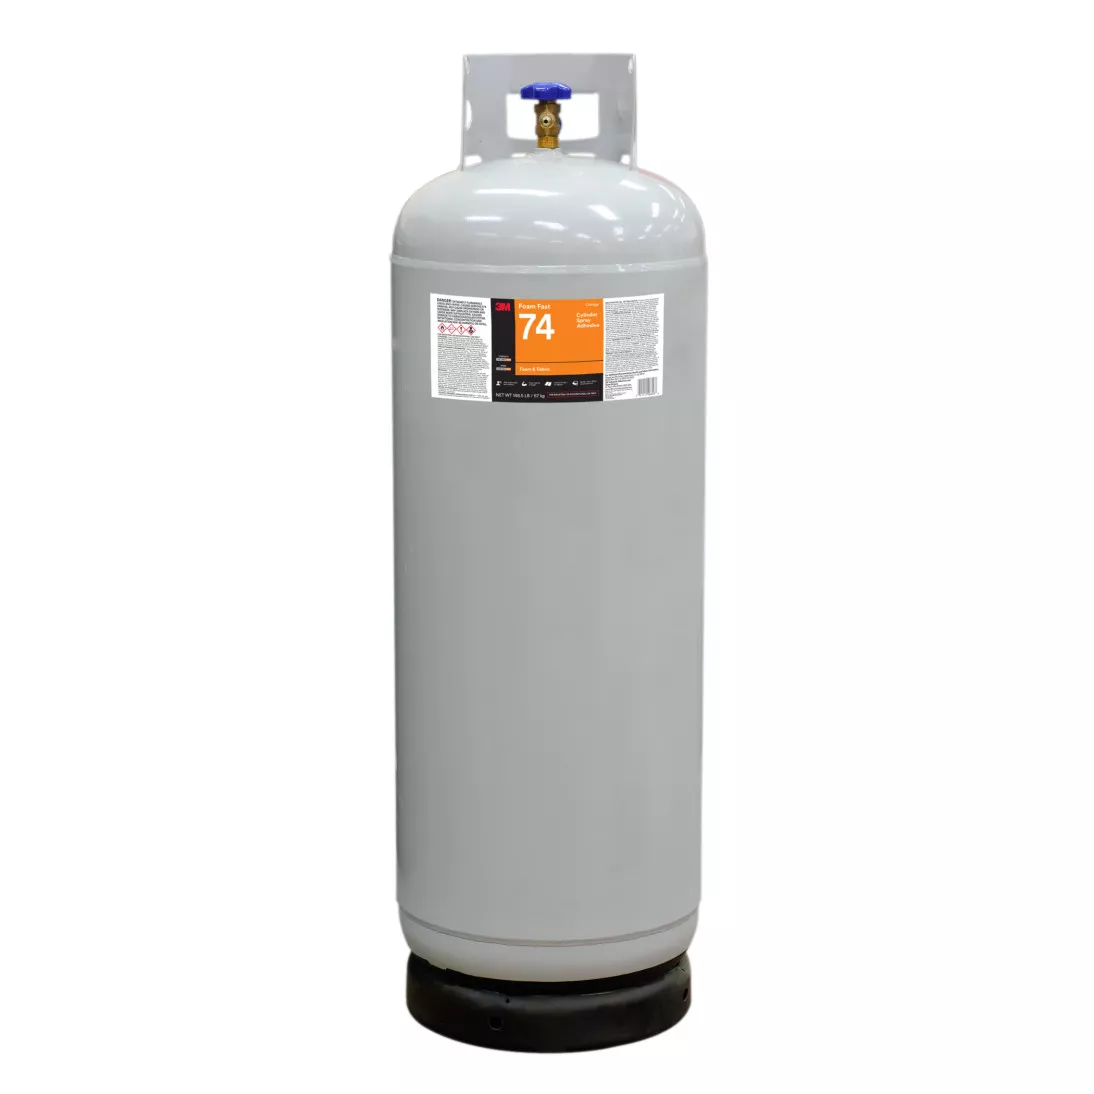 3M™ Foam Fast 74 Cylinder Spray Adhesive, Orange, Intermediate Cylinder
(Net Wt 148.5 lb)